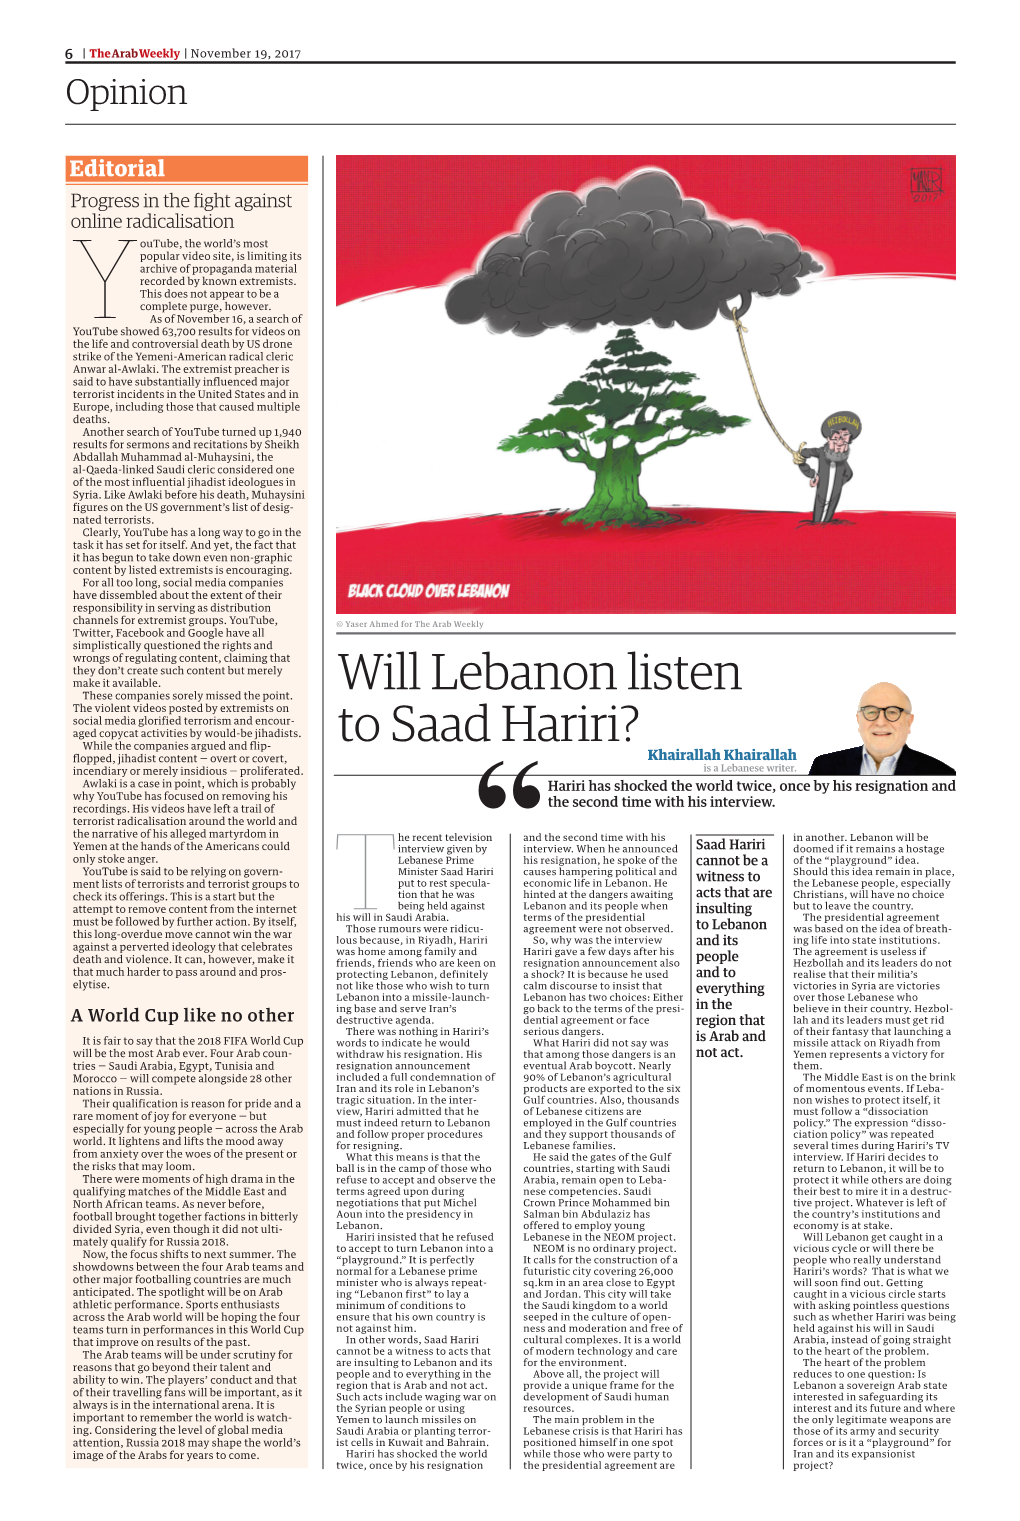 Will Lebanon Listen to Saad Hariri?